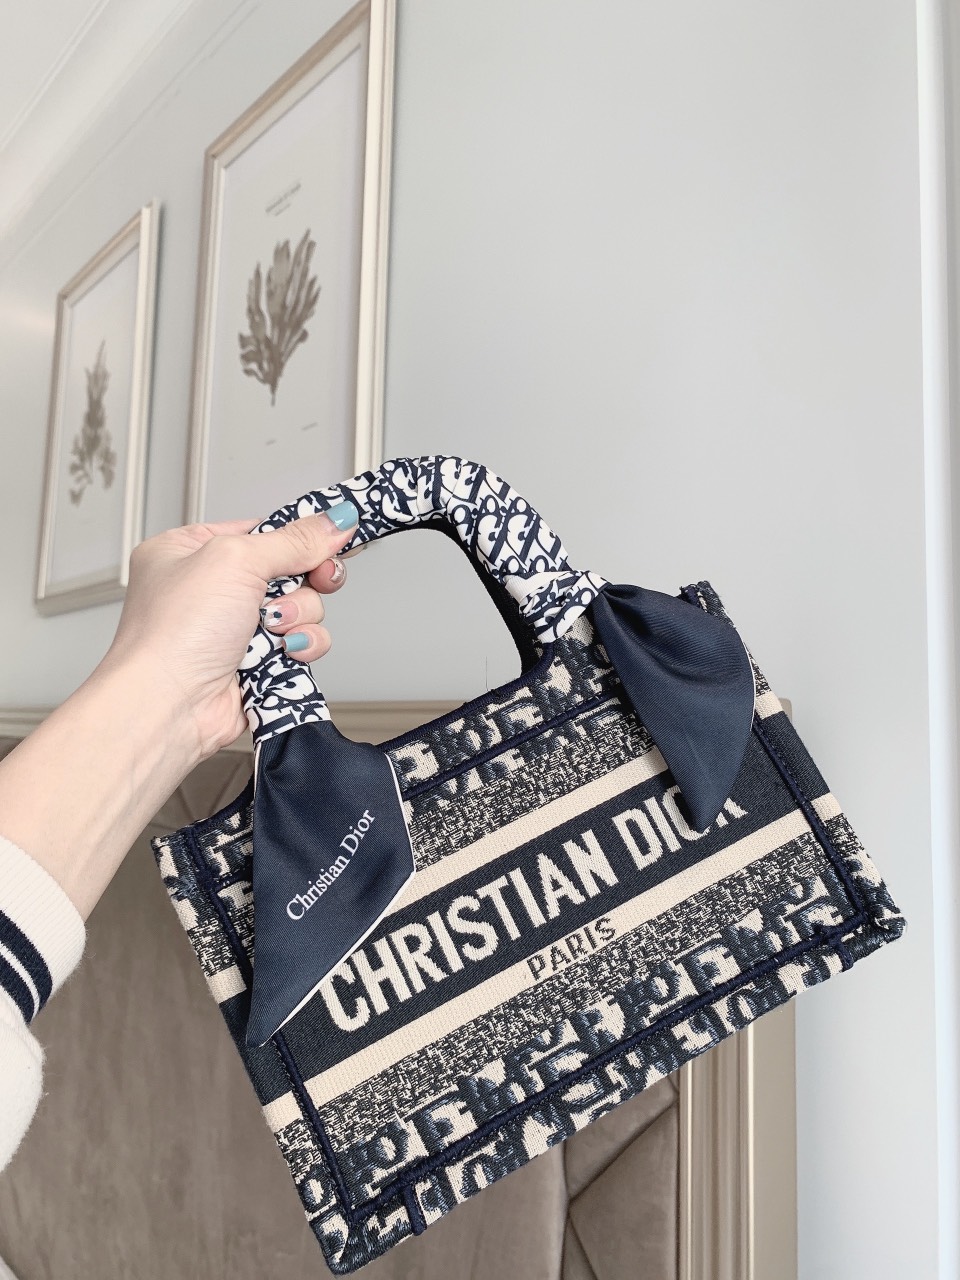 Mẫu Túi Christian Dior Book Tote Đẹp Tuyệt Vời Cho Quý Cô